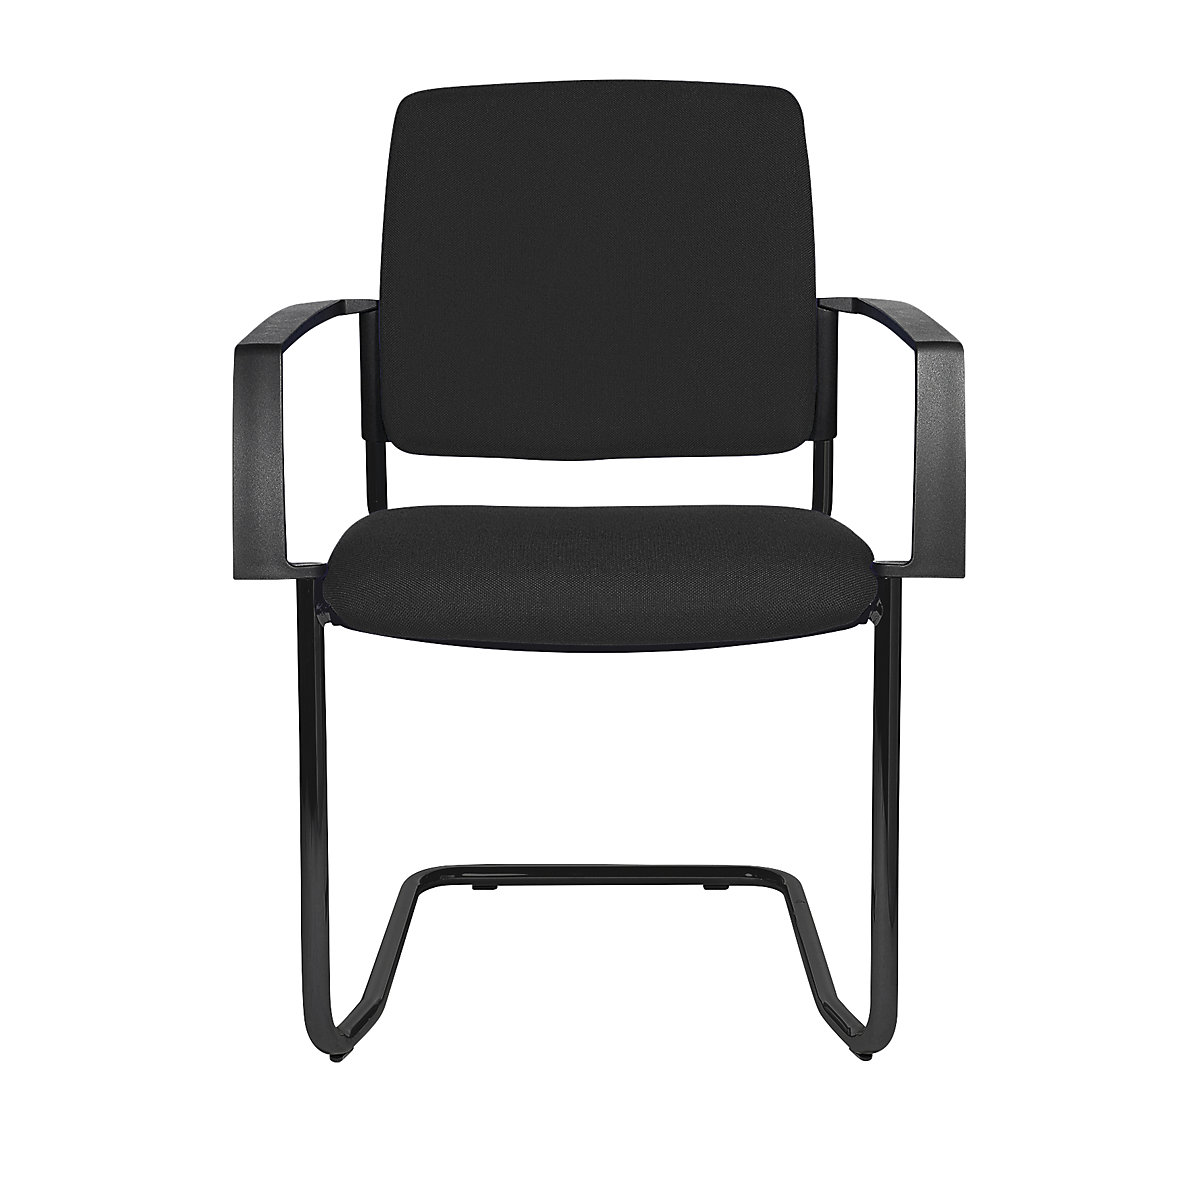 Čalúnená stohovacia stolička – Topstar, kreslo na pružnom podloží, OJ 2 ks, podstavec čierna, čalúnenie čierna-6